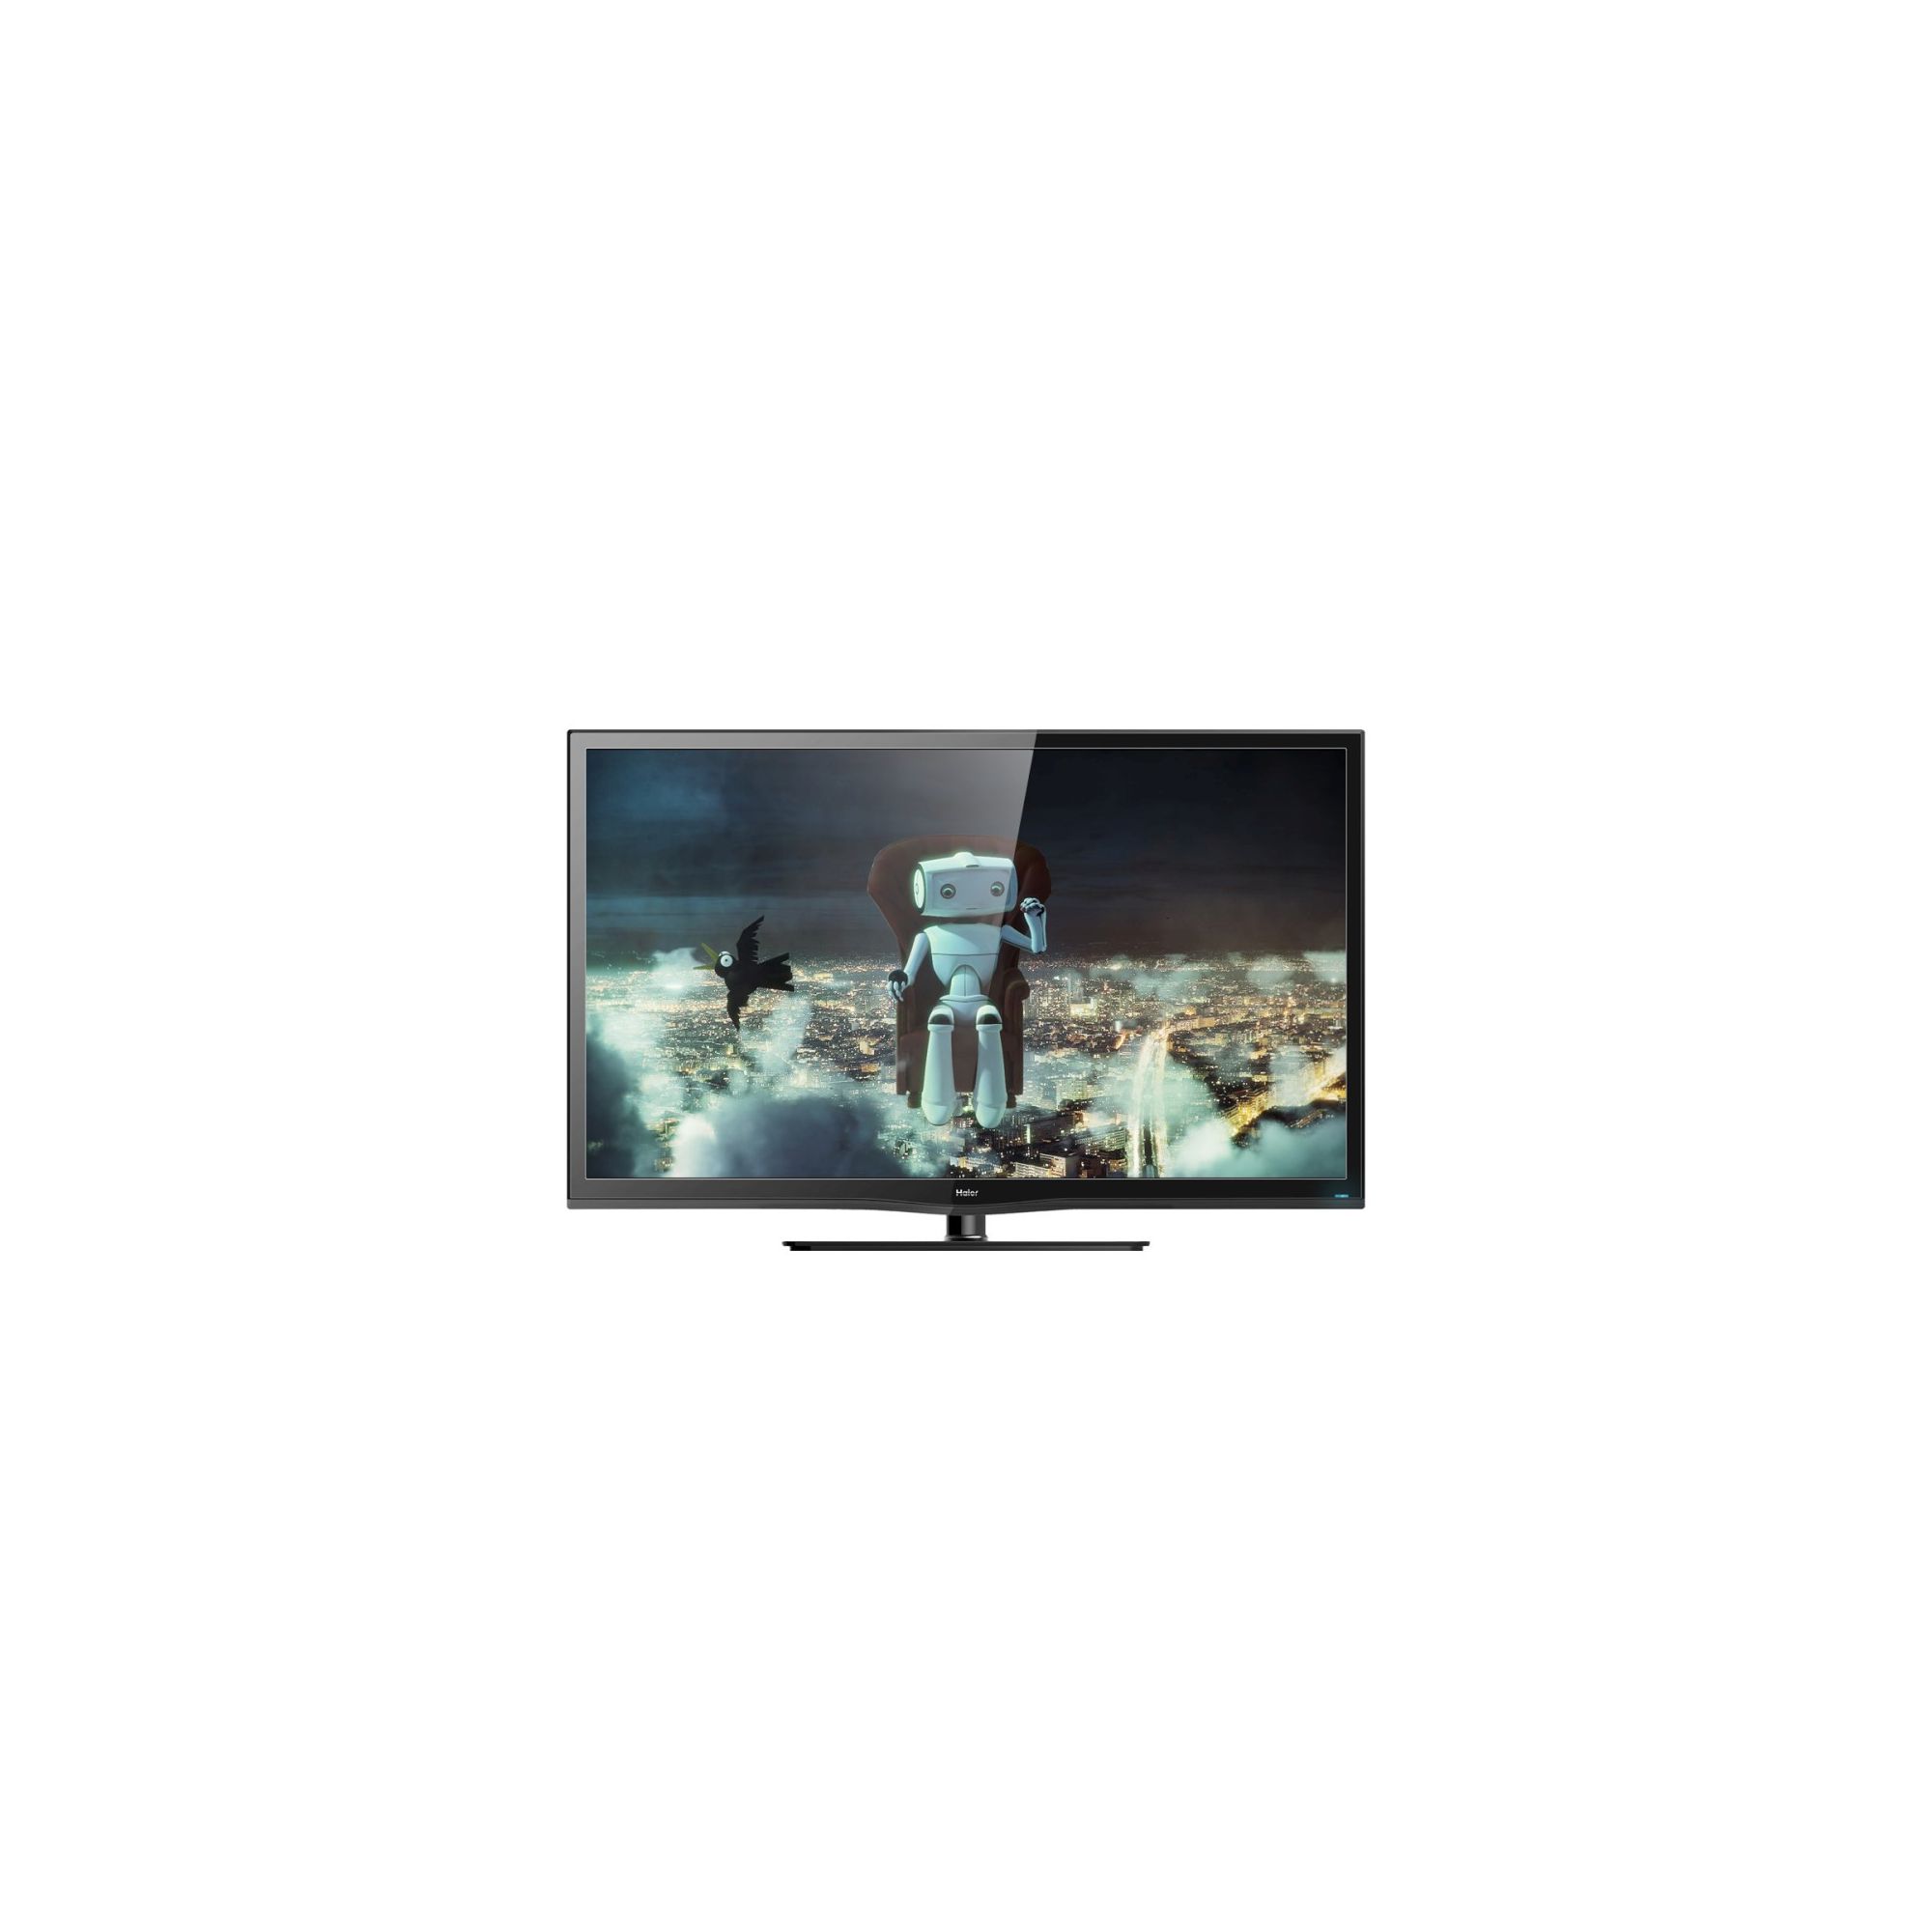 Haier 22in Full HD LED TV 1920 x 1080p 250cd/m2 HDMI x 2 USB x 1 Black.